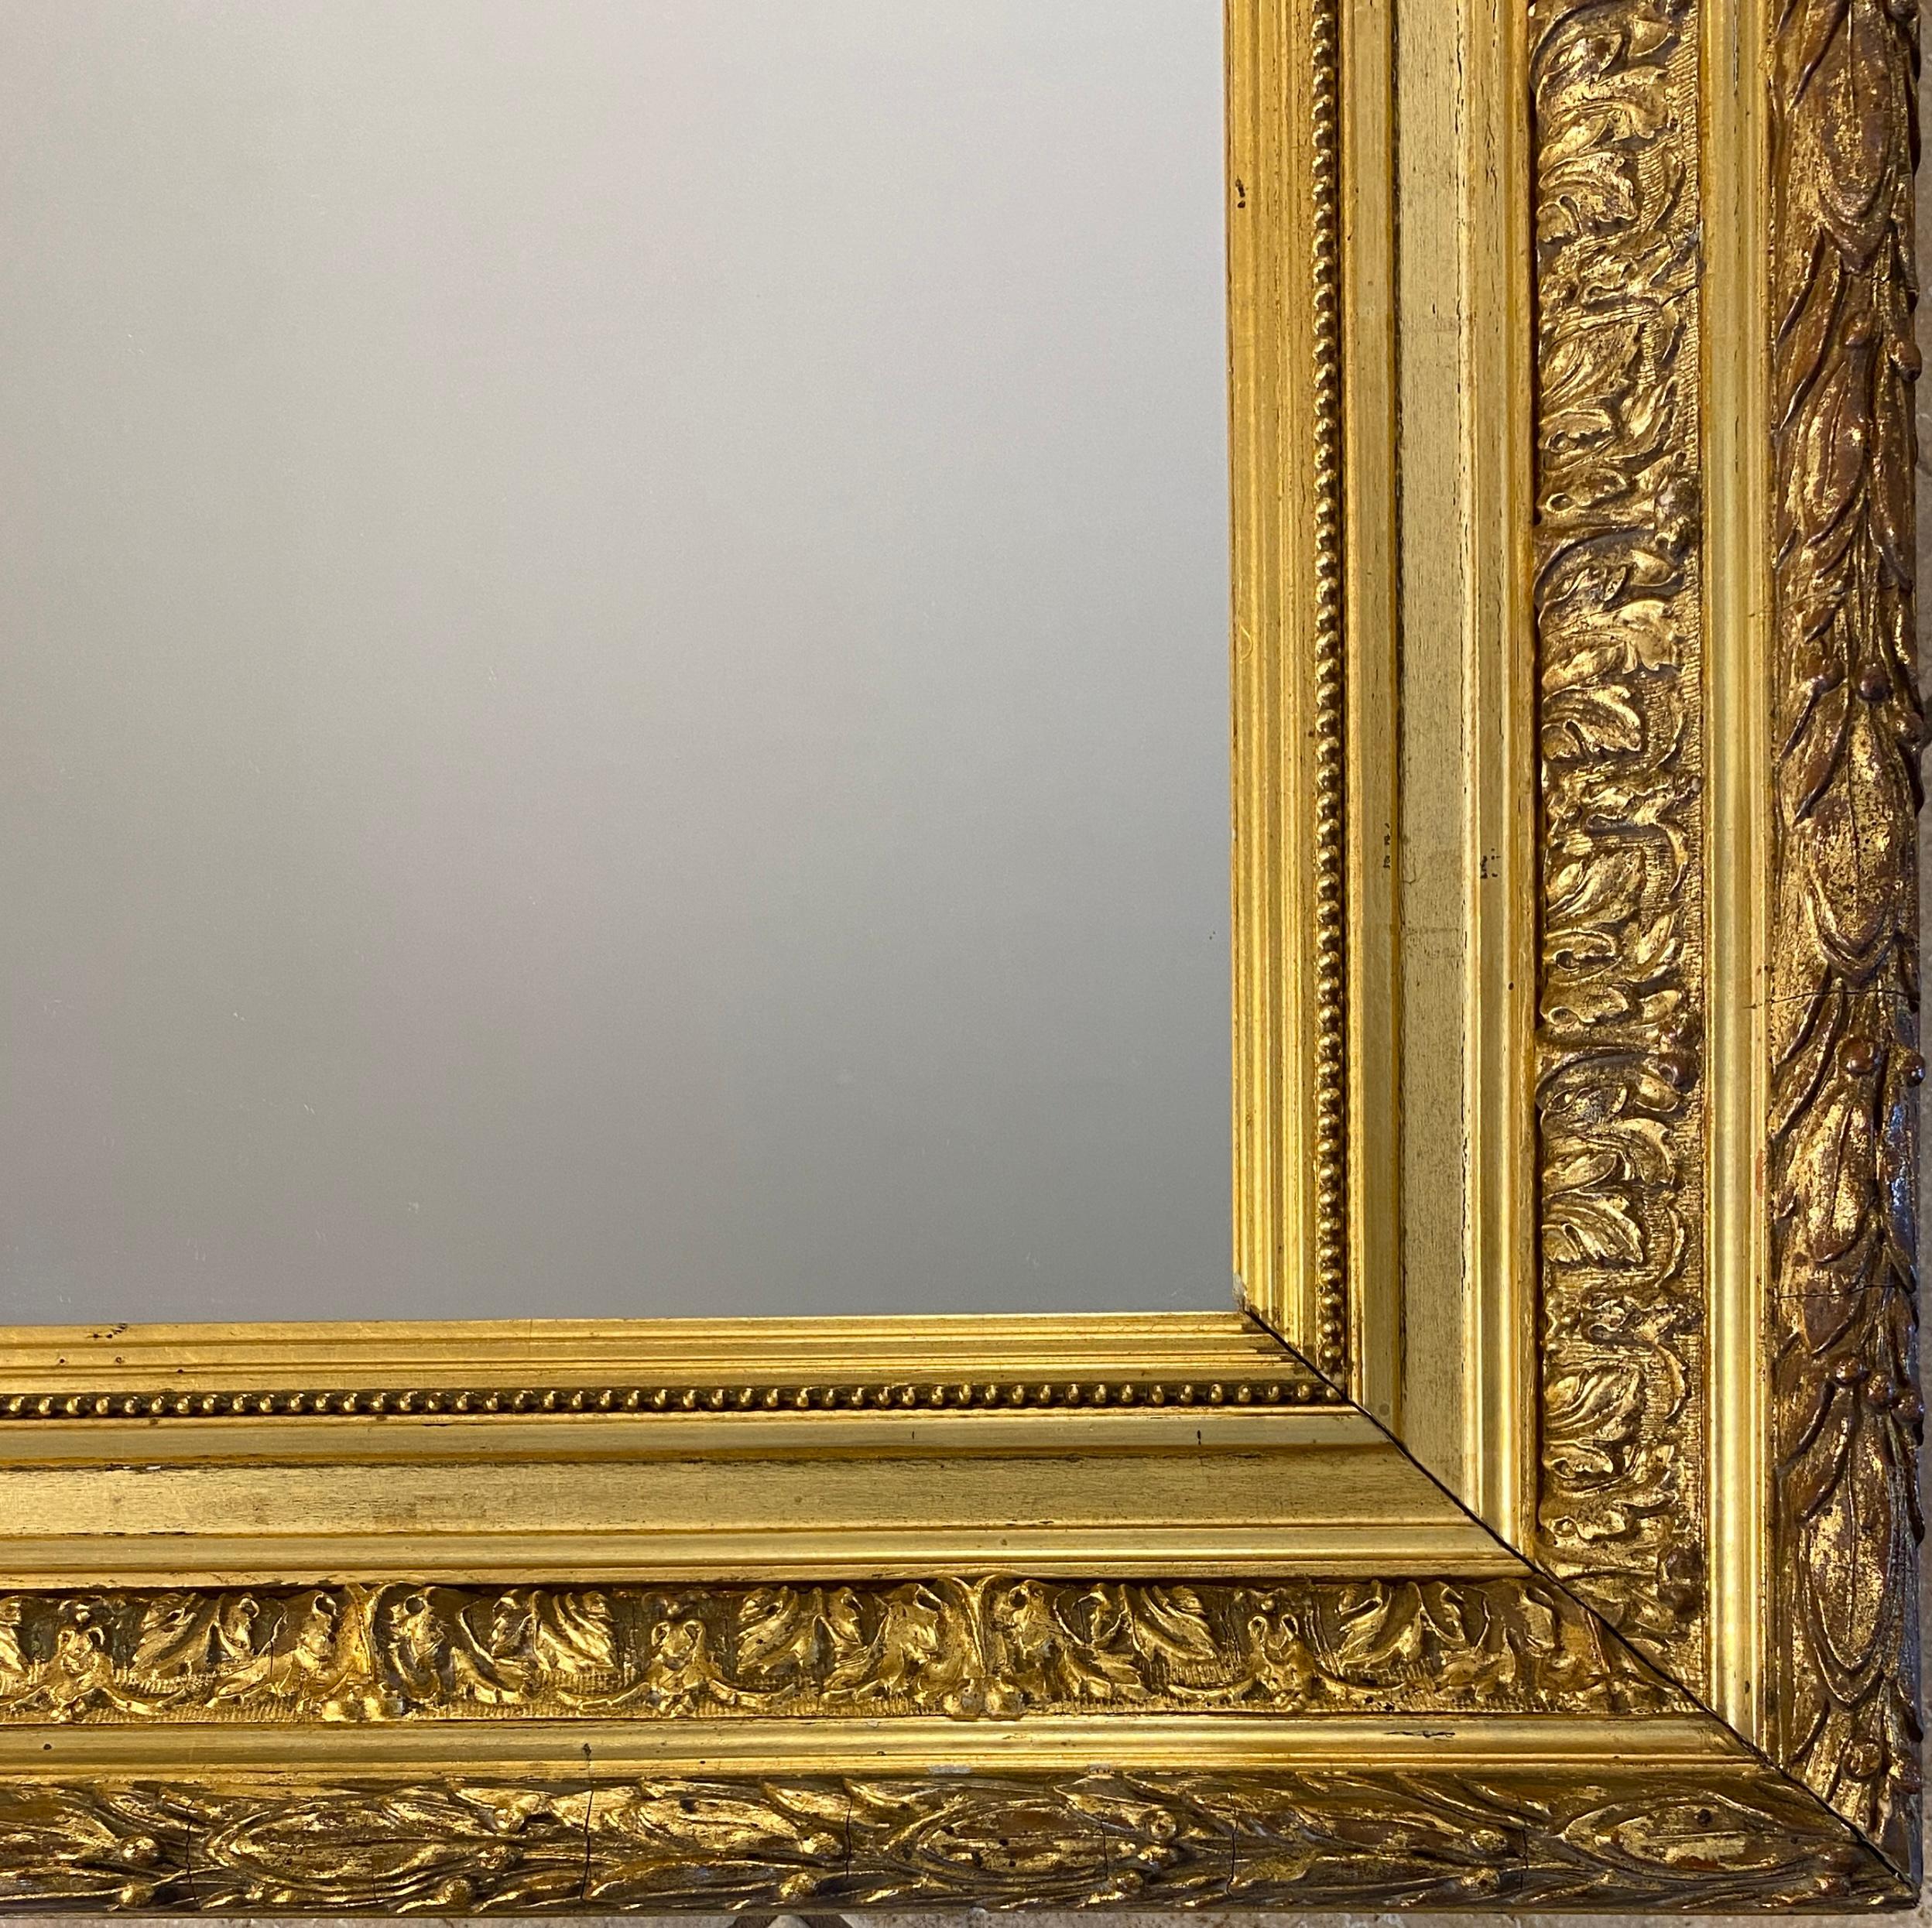 Ein großzügig bemessener, rechteckiger Spiegel im Louis-XVI-Stil mit einem aufwändig geschnitzten Rahmen aus Goldholz, der eine außergewöhnliche Detailgenauigkeit aufweist. Es spiegelt den prachtvollen, ornamentalen Stil Ludwigs XVI. wider und